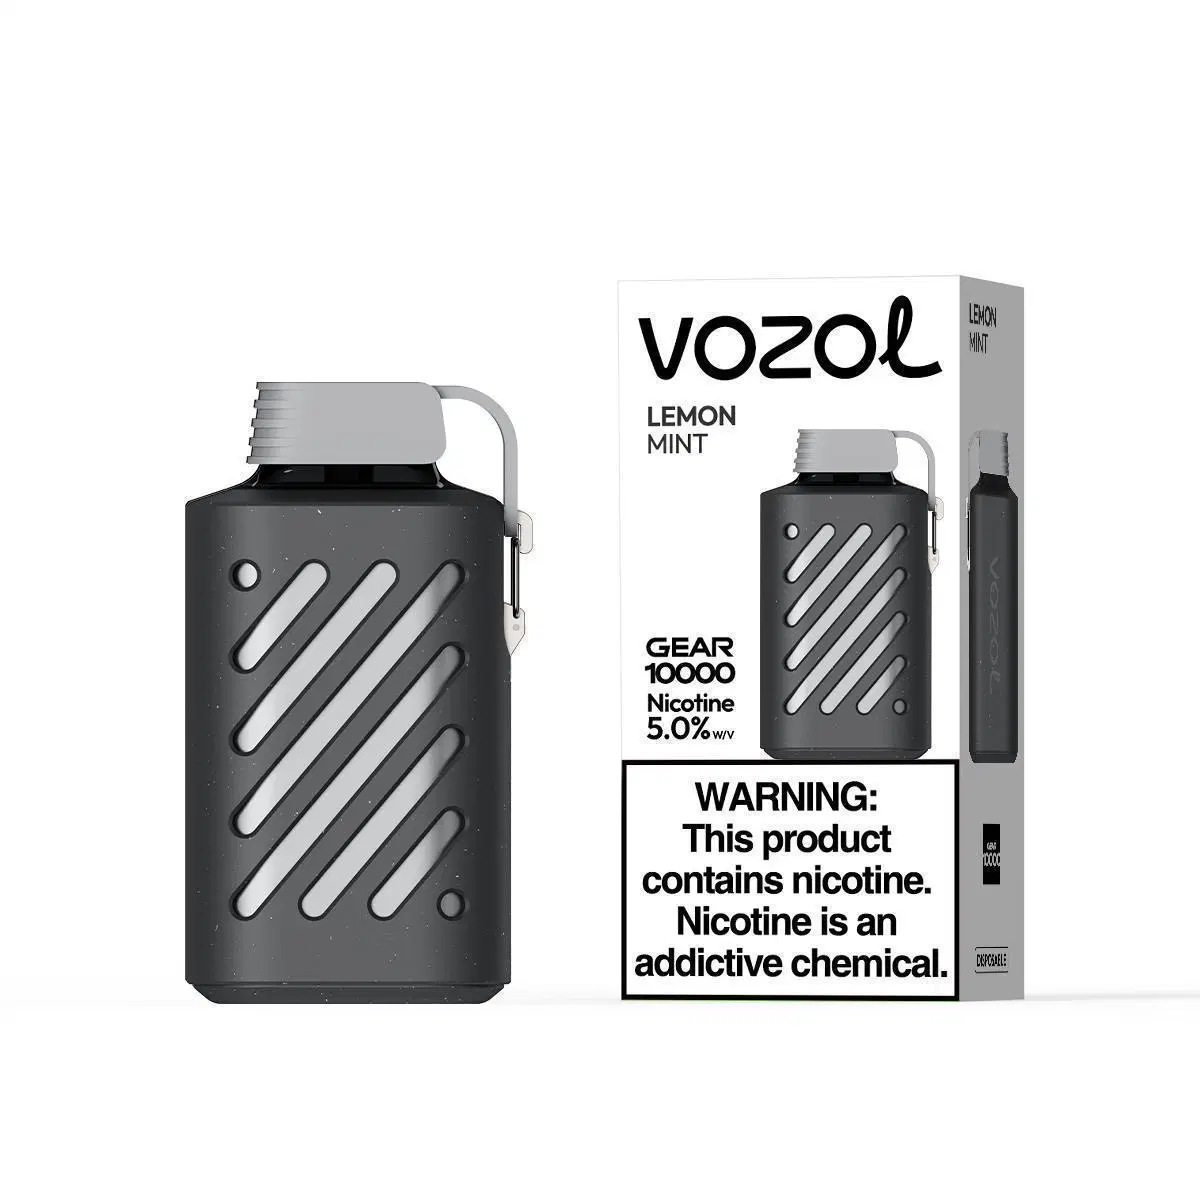 10000 Puffs заводе оптовые цены на аккумуляторы одноразовые электронные сигареты Vozol шестерни установите флажок Vape